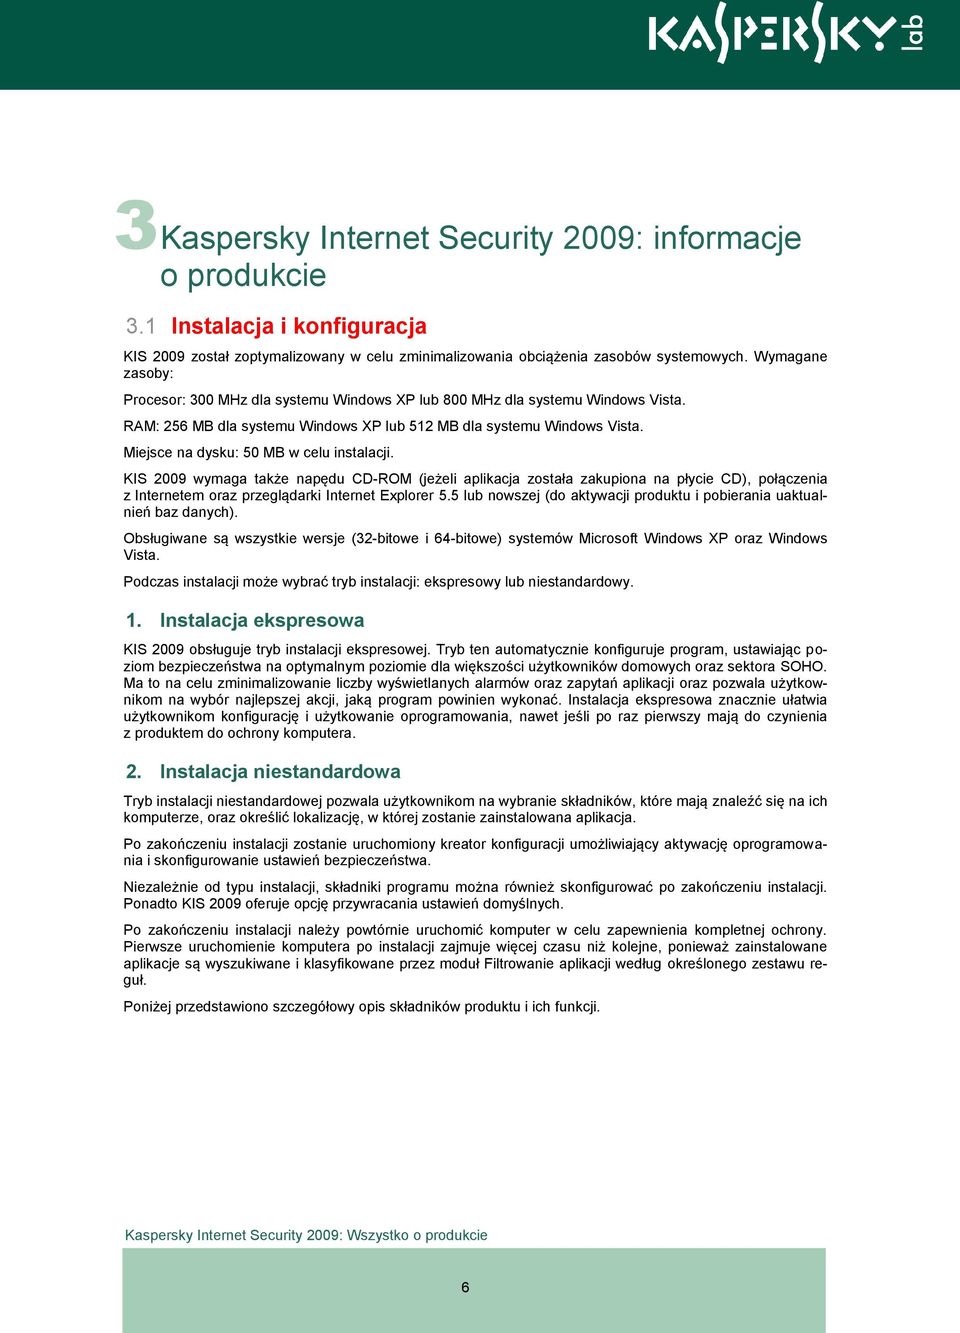 Miejsce na dysku: 50 MB w celu instalacji. KIS 2009 wymaga także napędu CD-ROM (jeżeli aplikacja została zakupiona na płycie CD), połączenia z Internetem oraz przeglądarki Internet Explorer 5.